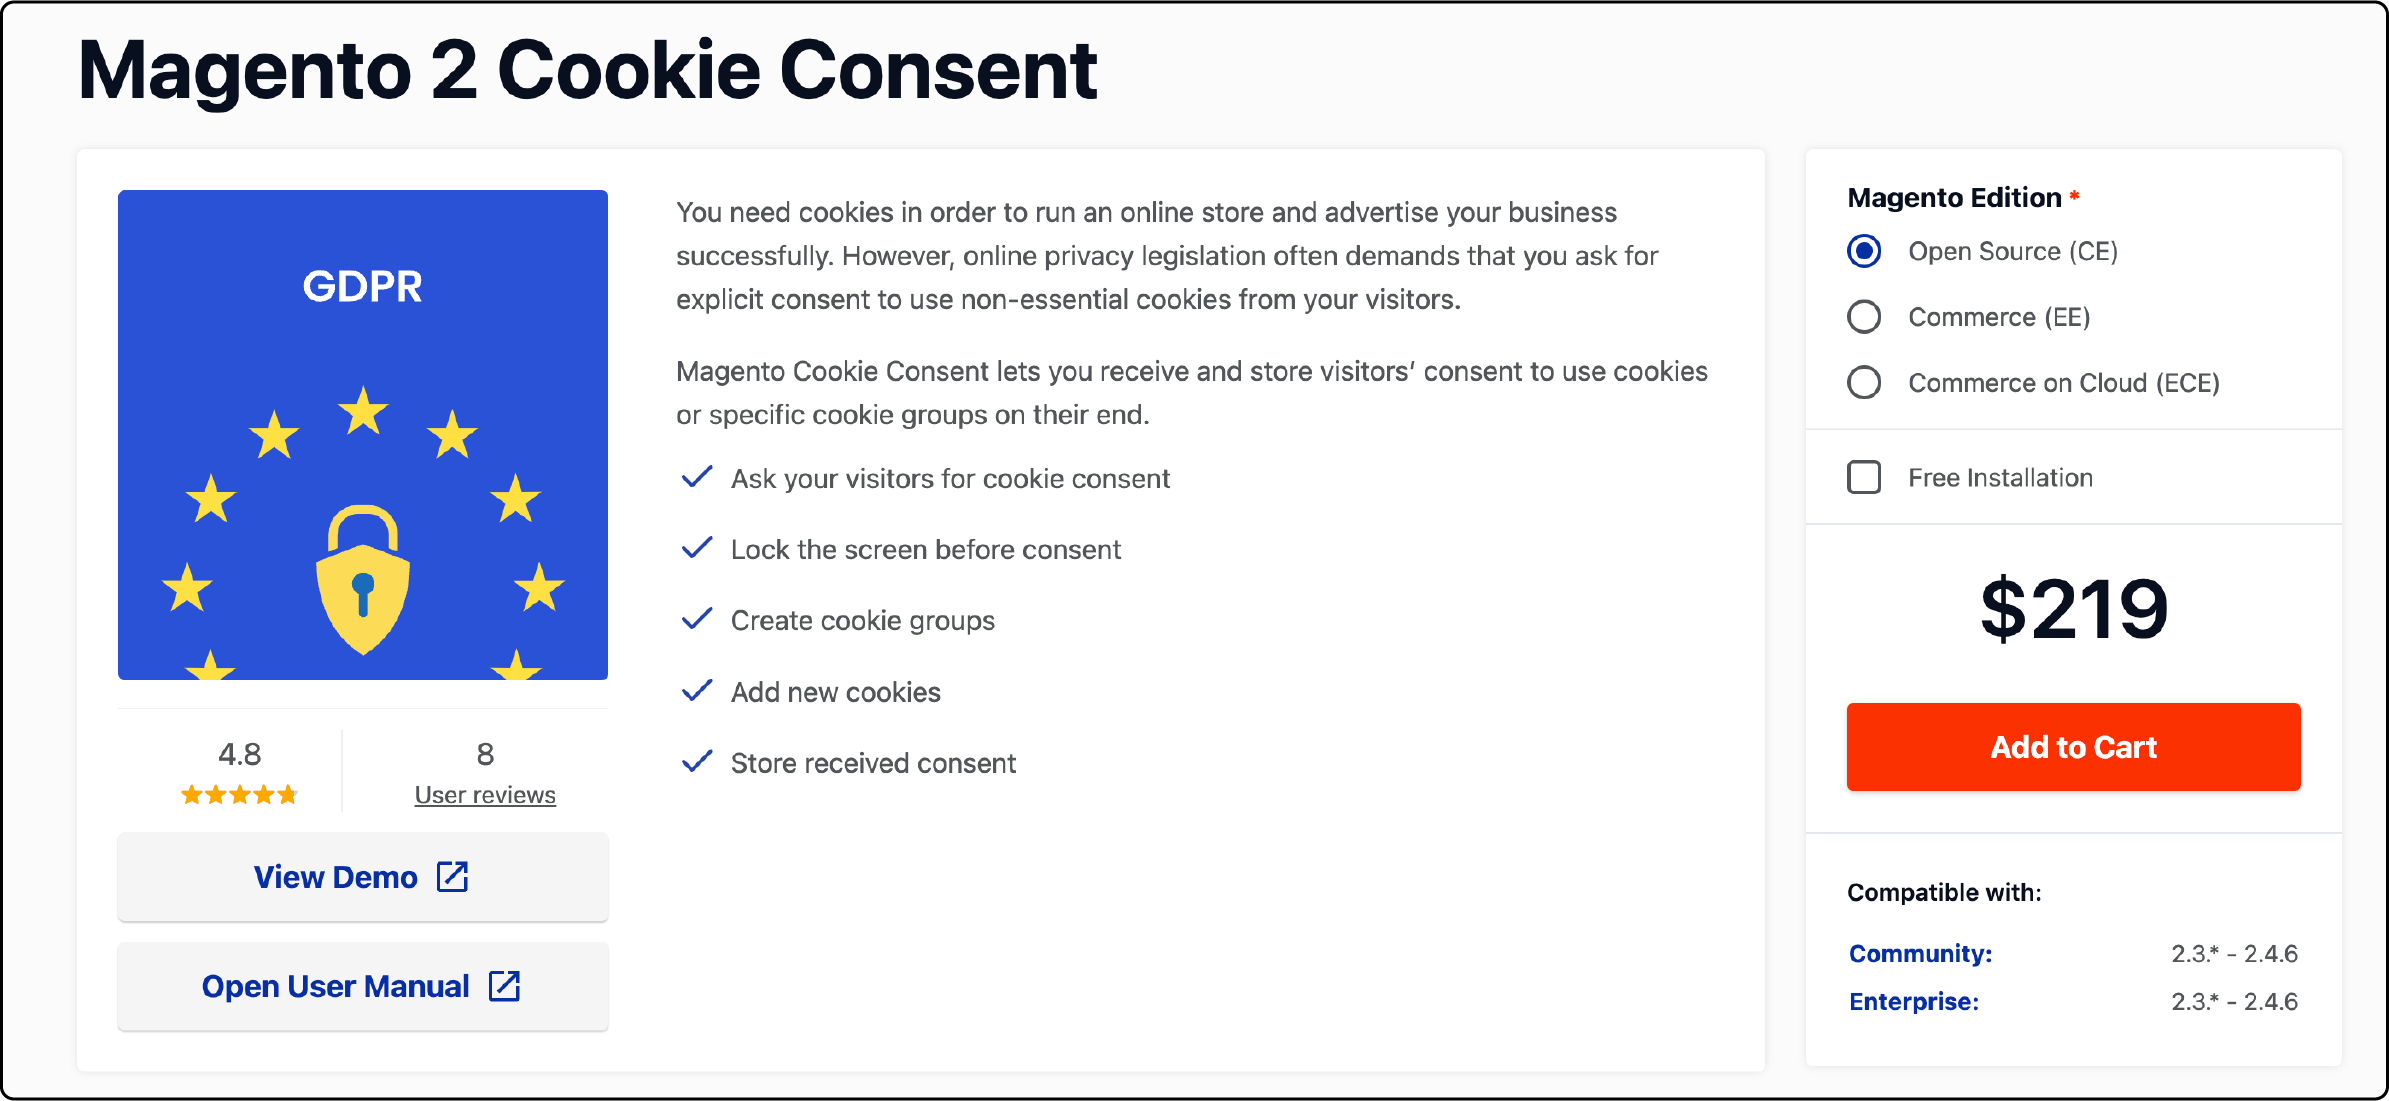 Magento 2 Cookie Consent dashboard by Mirasvit